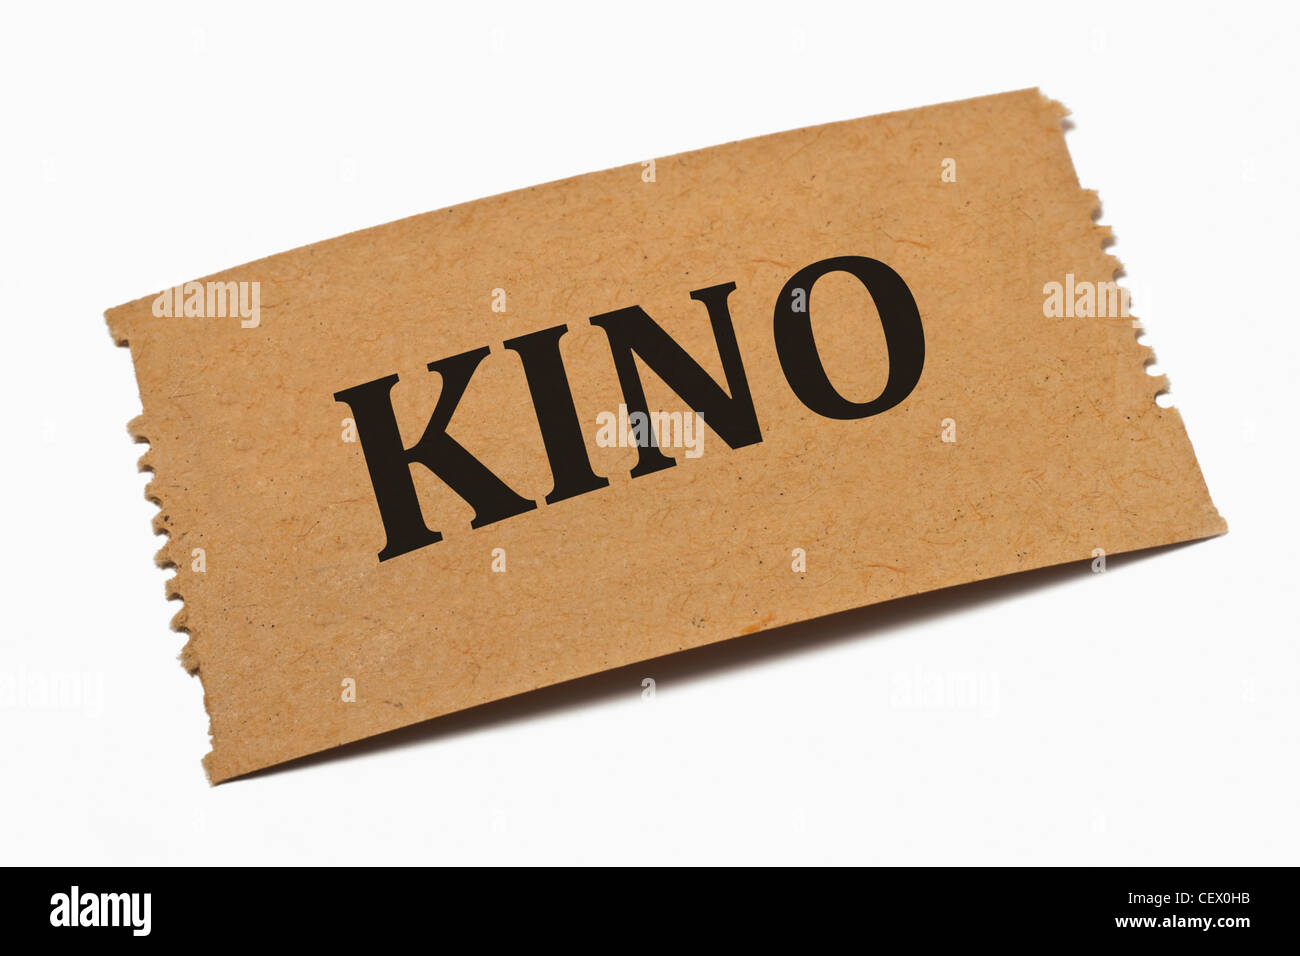 Detailansicht einer Karte aus Papier mit der Aufschrift Kino | Detail photo of a paper card with the inscription Kino (Cinema) Stock Photo